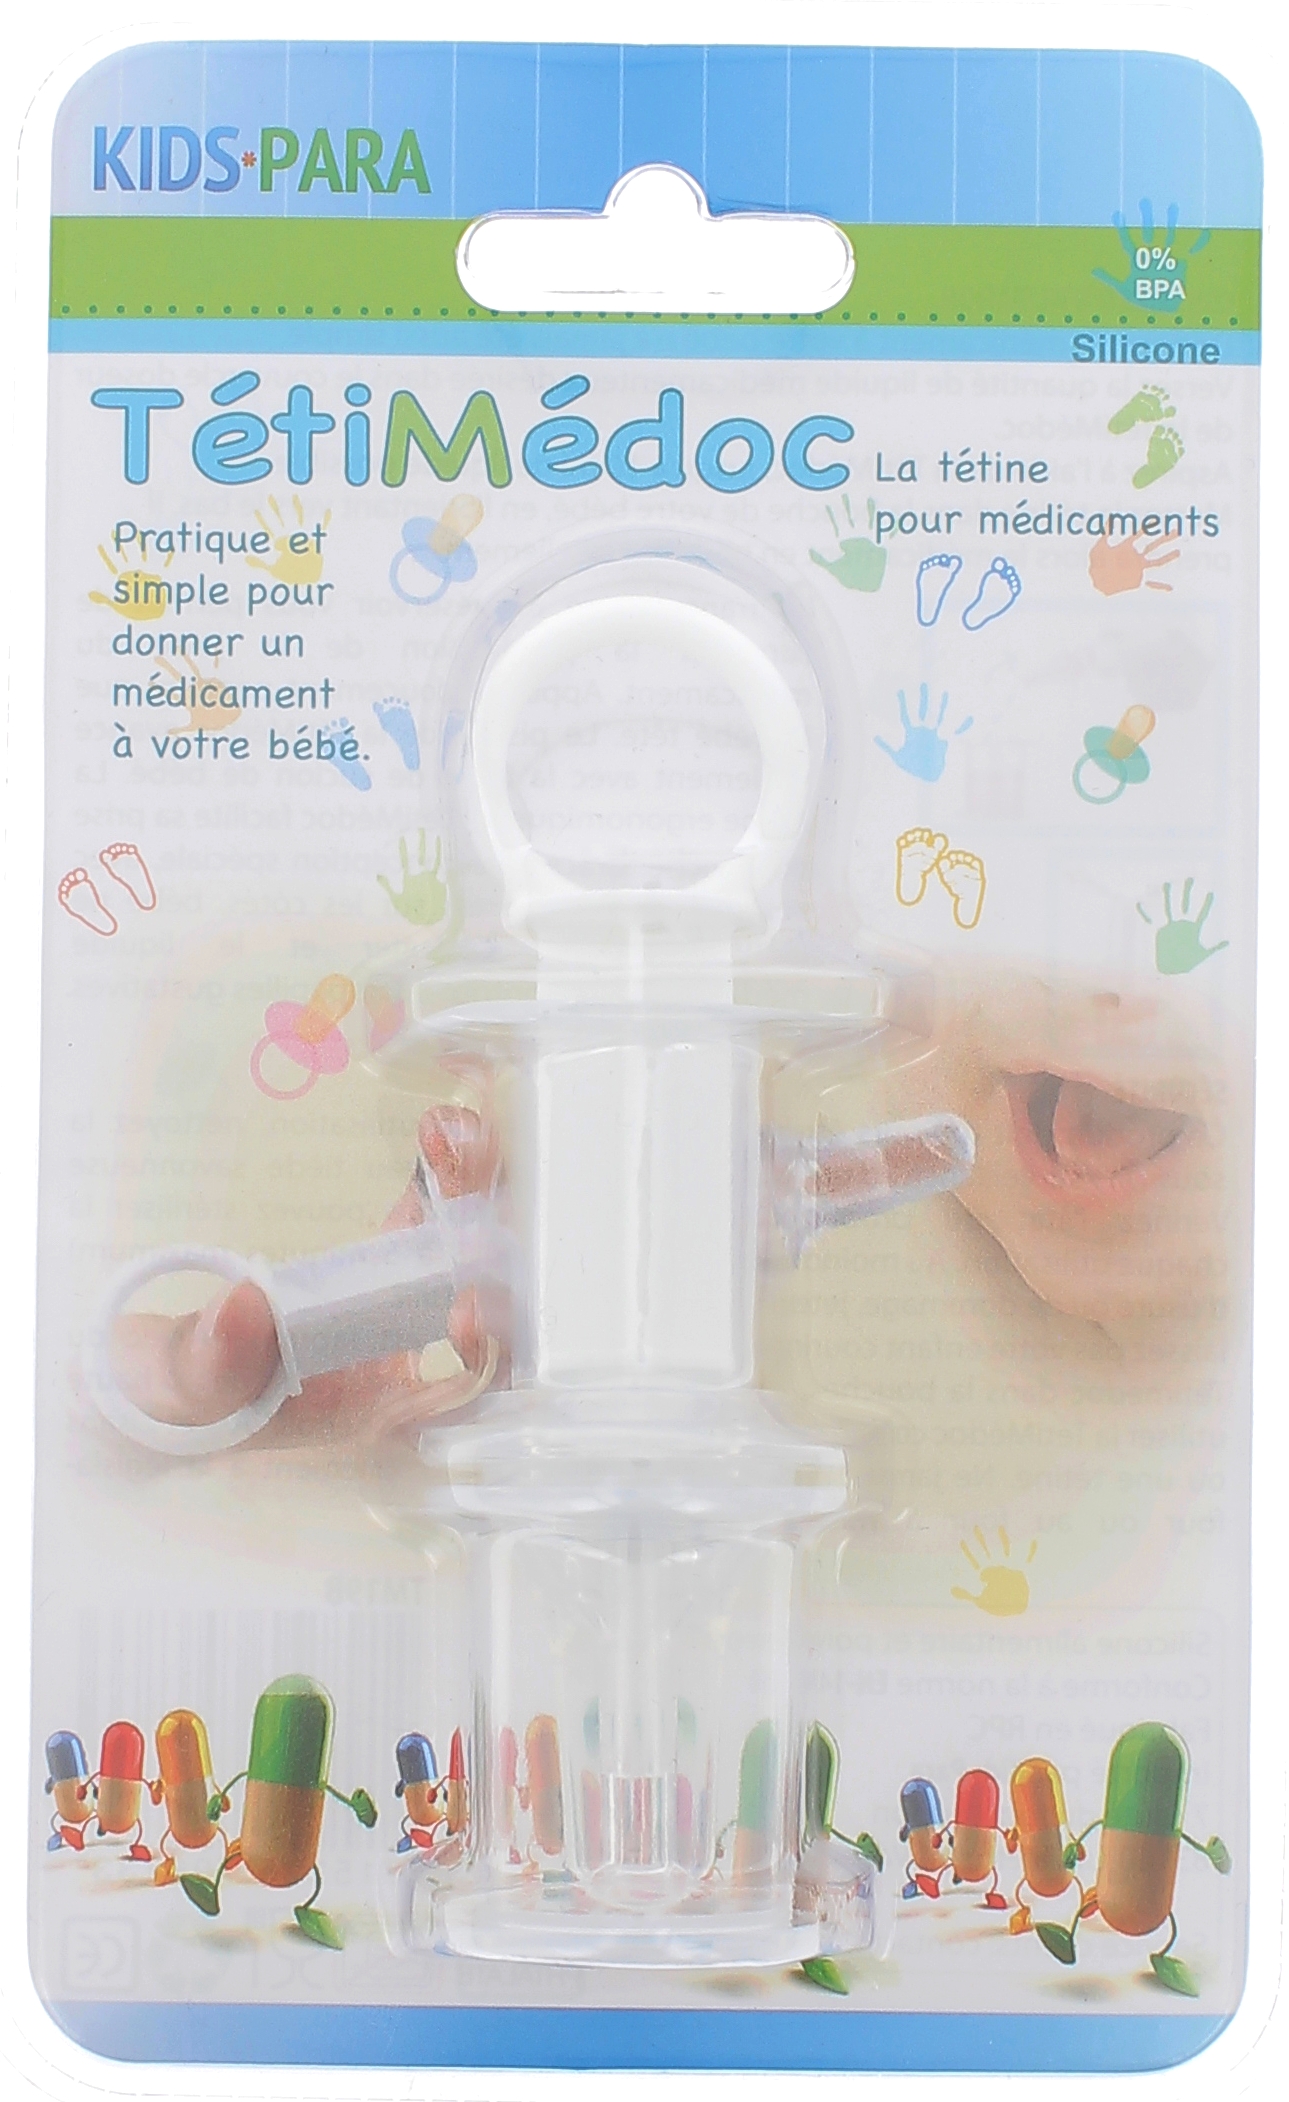 TétiMédoc tétine pour médicaments Kids Para - 1 tétine